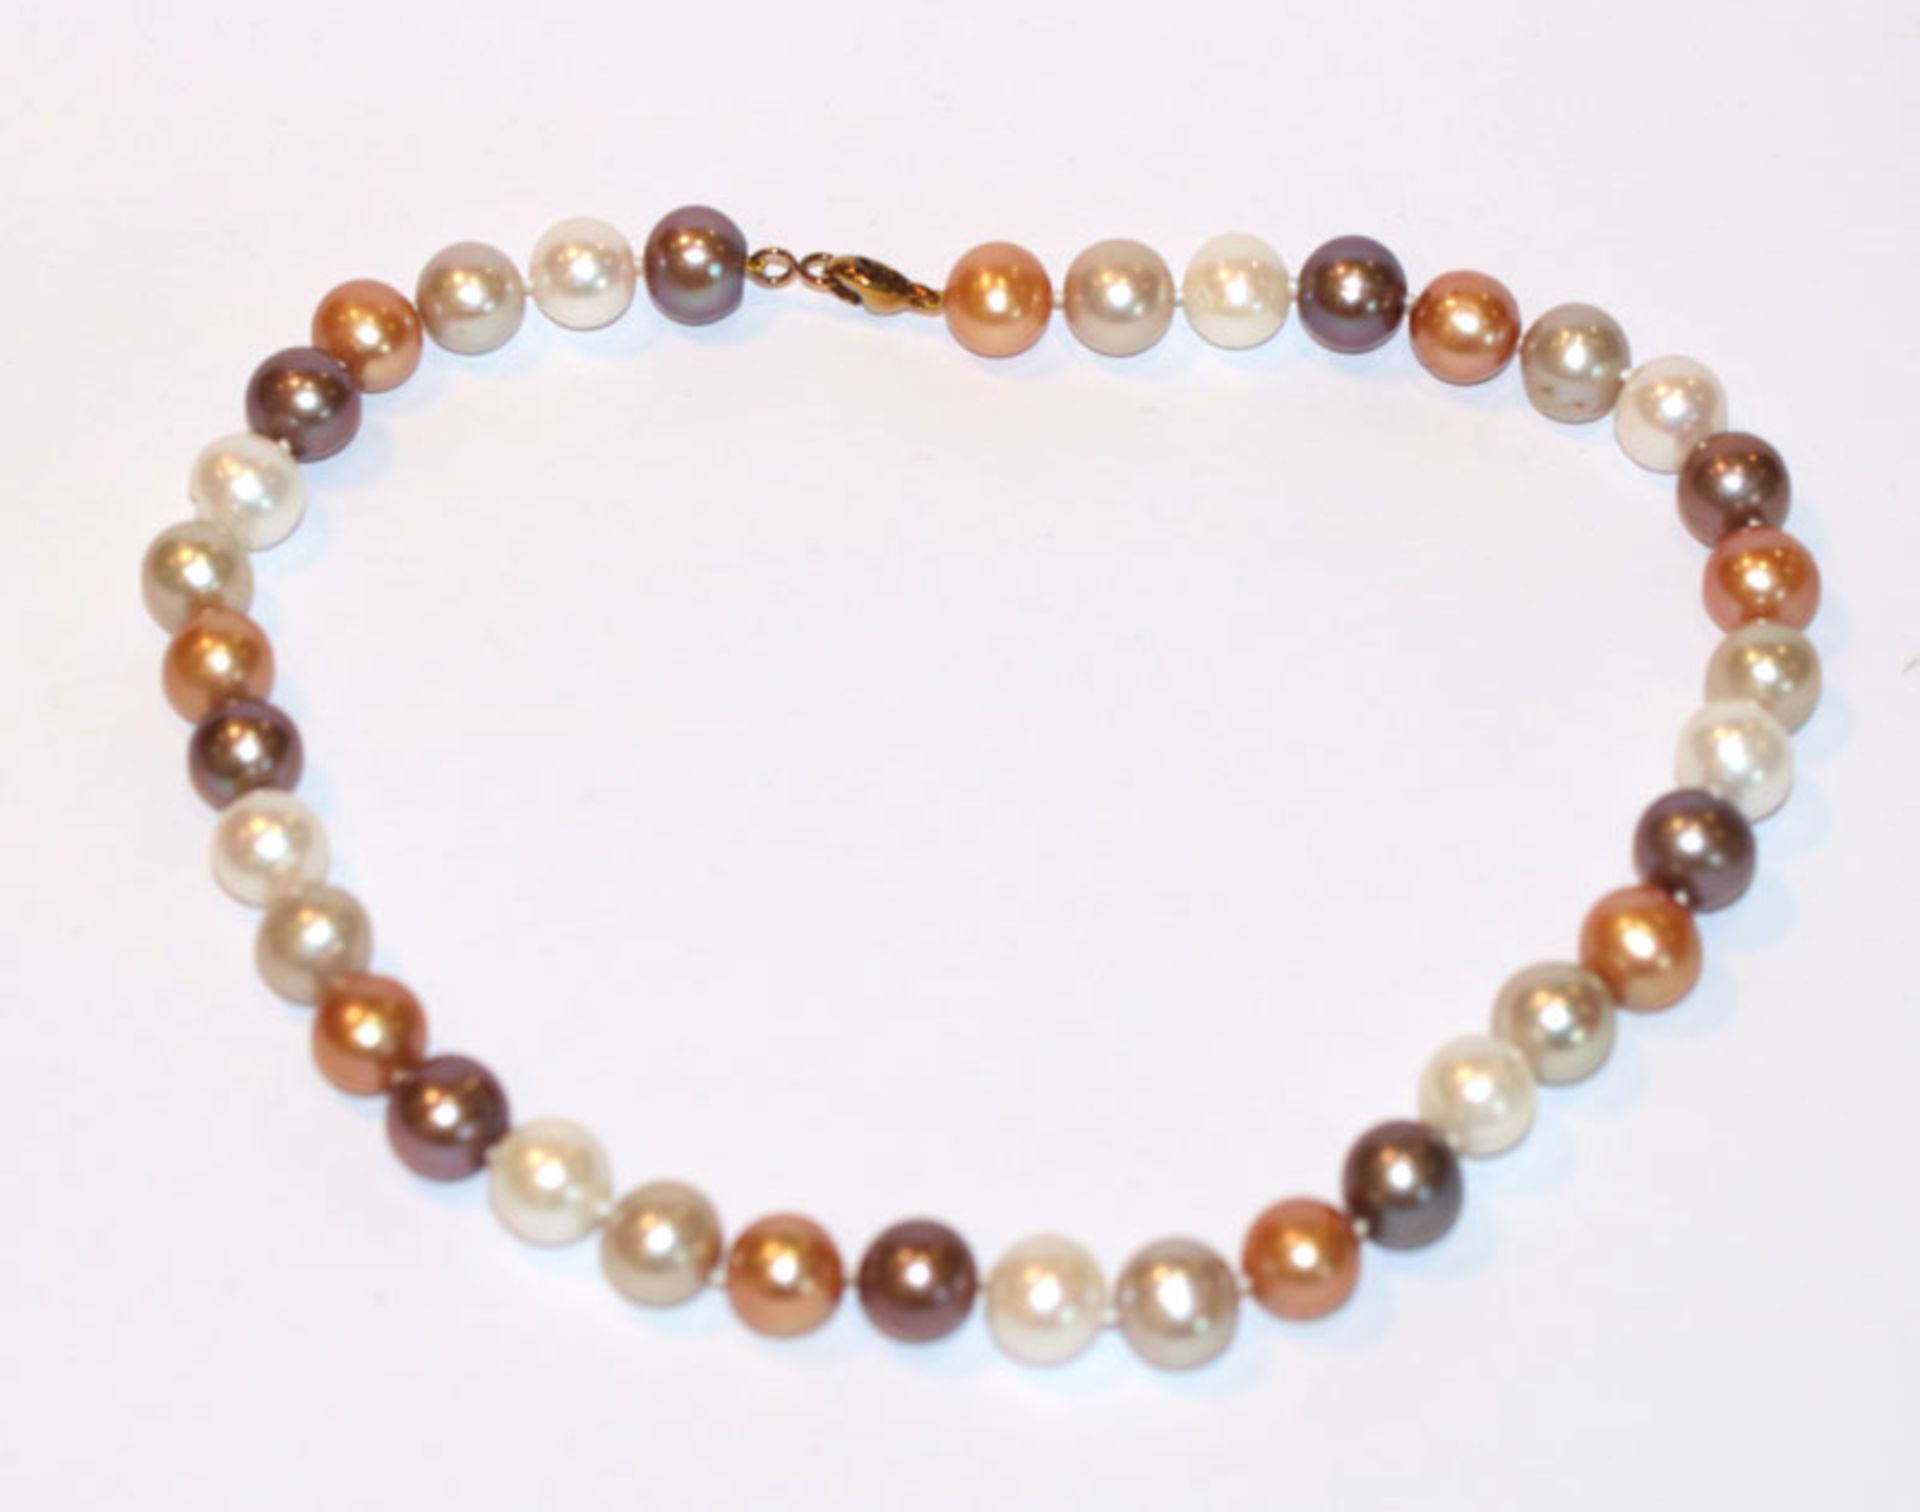 Perlenkette in beige/braun Tönen mit 8 k Gelbgold Schließe, L 42 cm